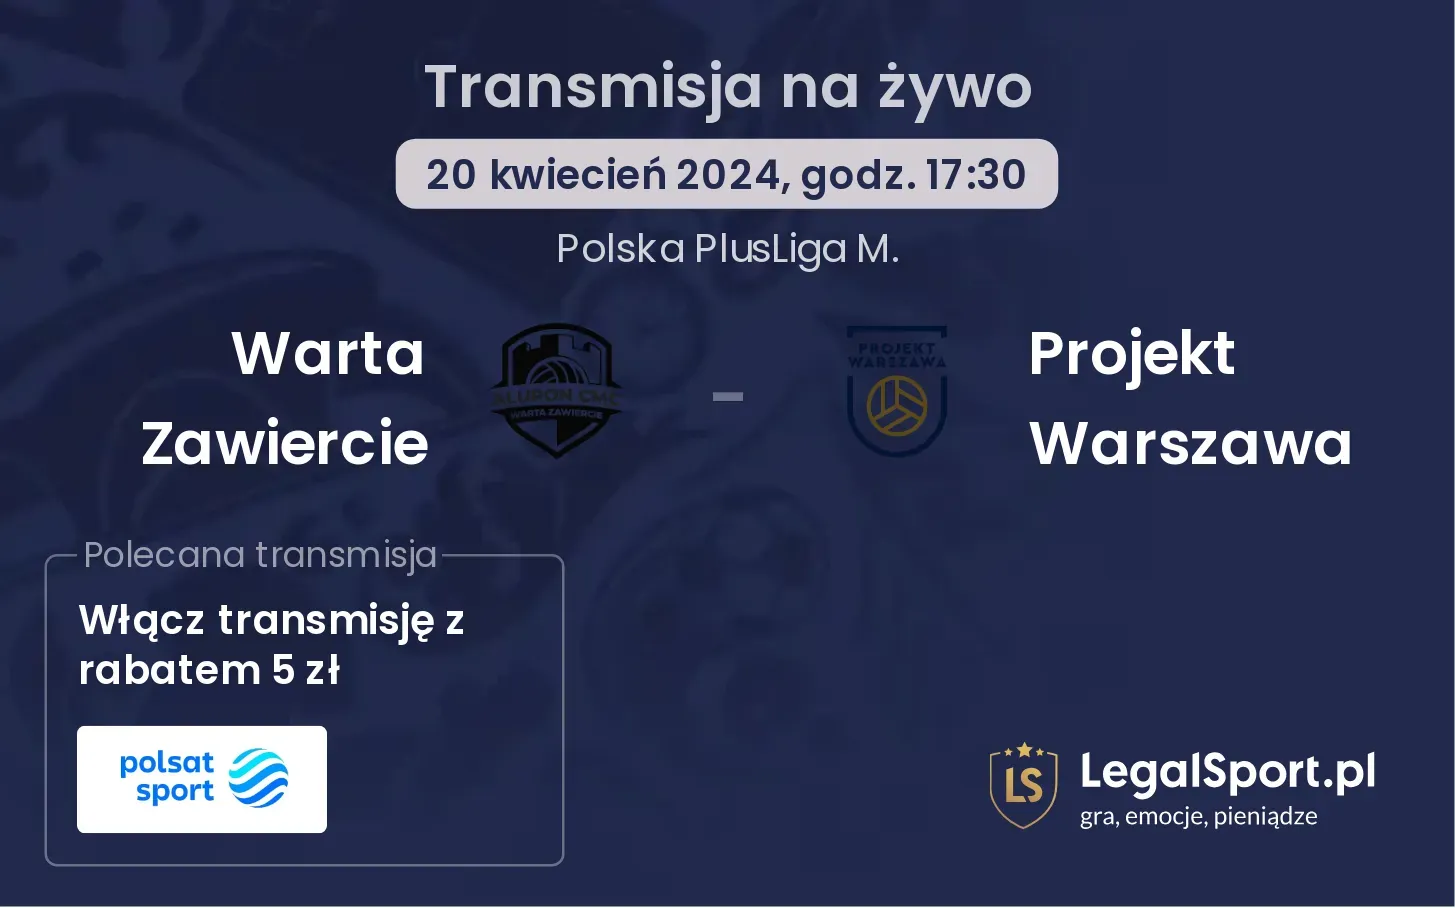 Warta Zawiercie - Projekt Warszawa transmisja na żywo